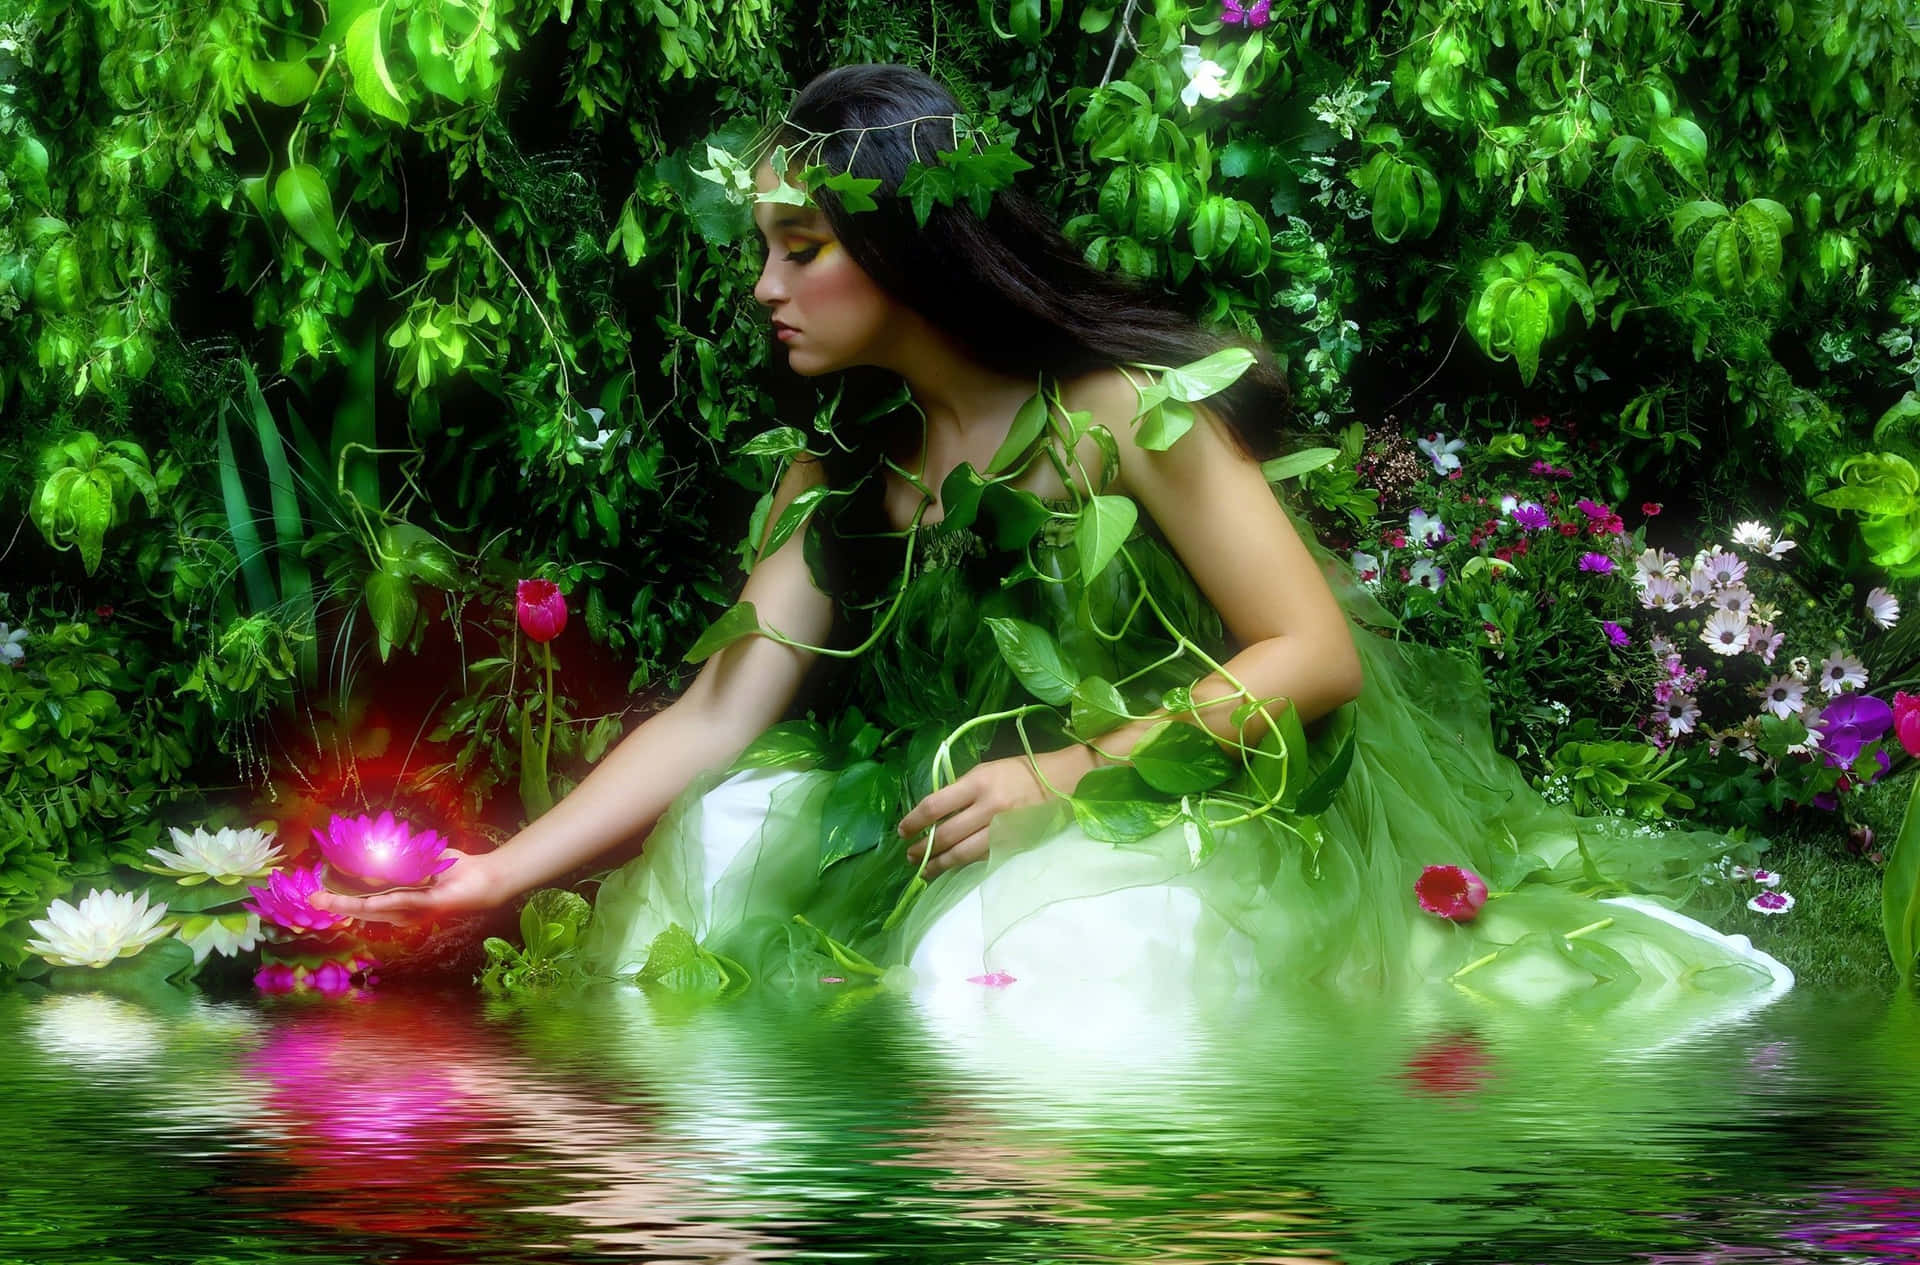 A Magical Fairy Gliding across a Mystical Forest